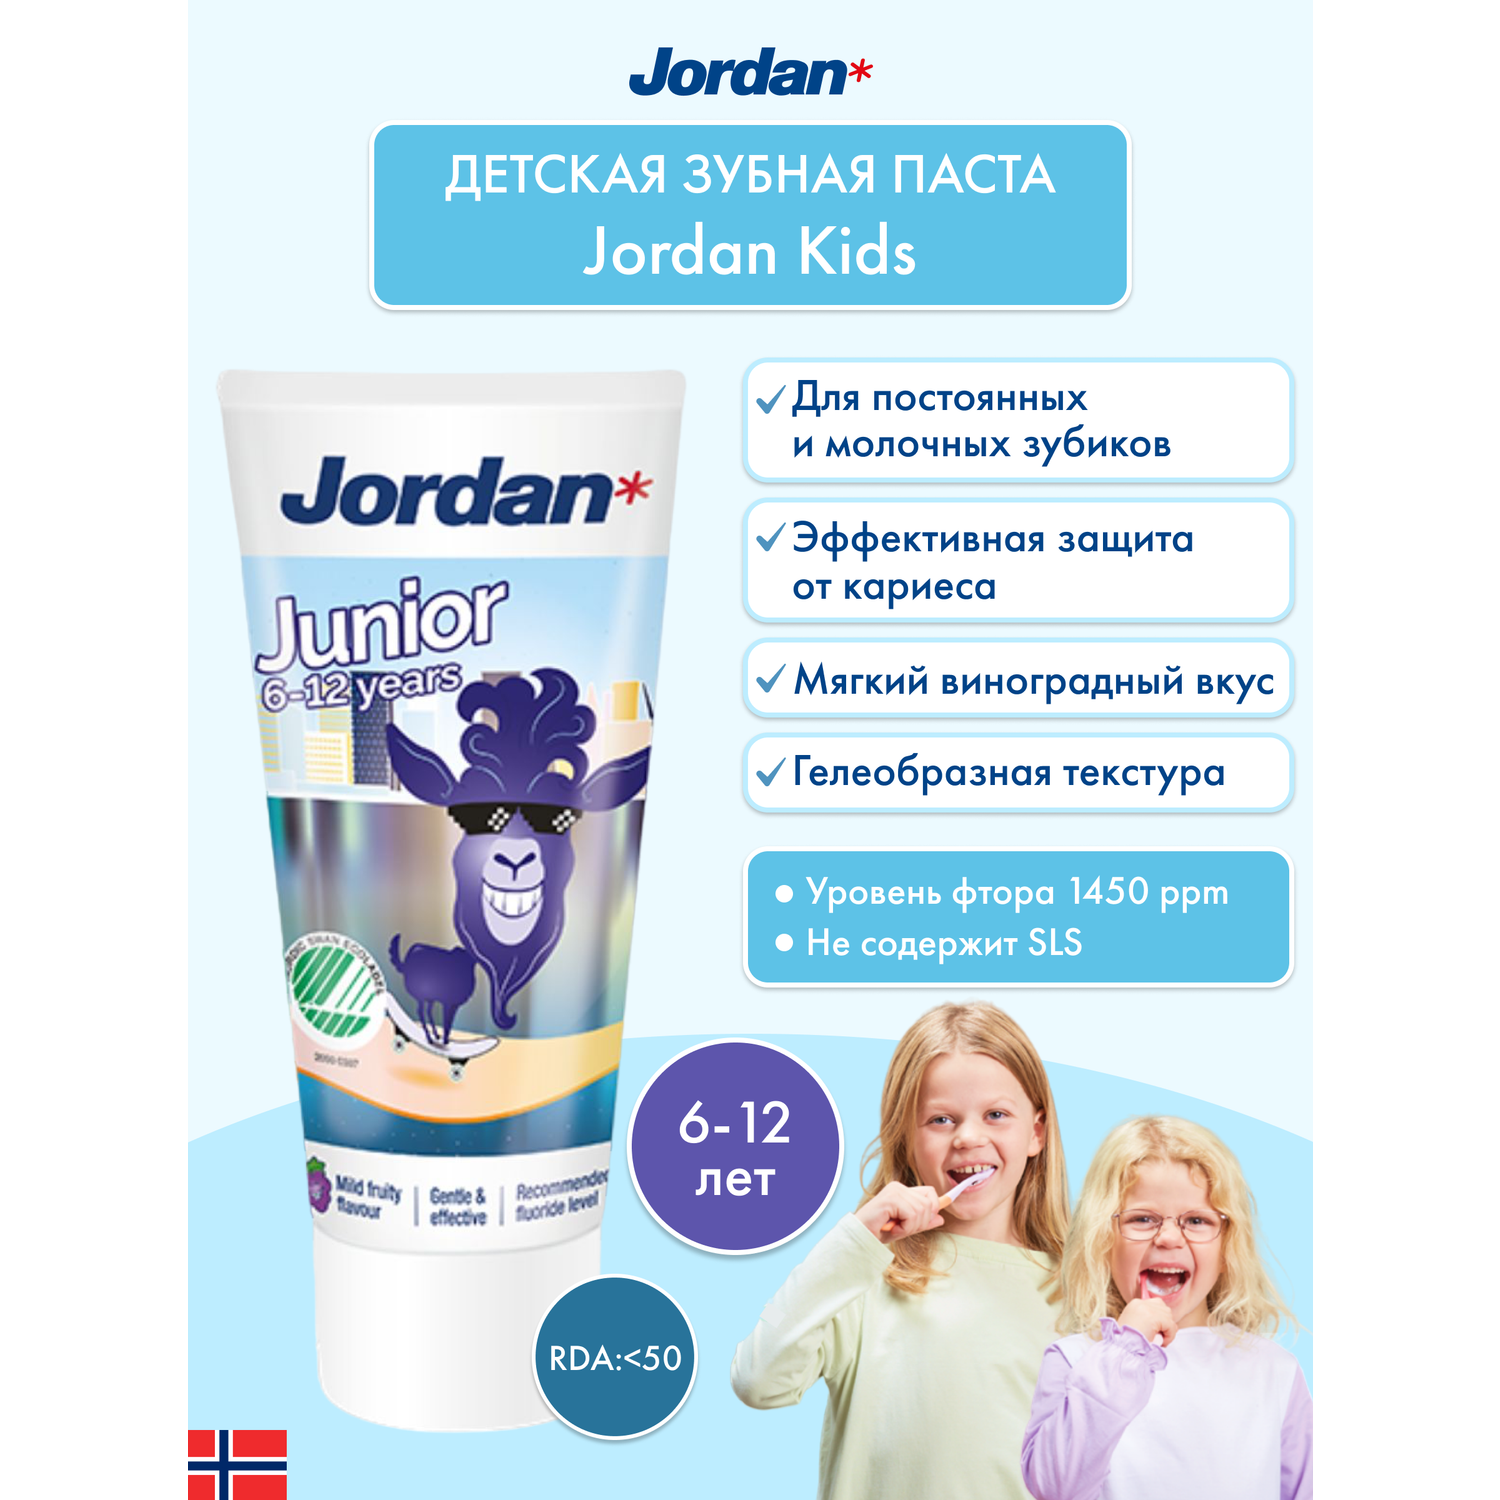 Детская зубная паста JORDAN Junior 6-12 с фтором и фруктовым вкусом - фото 2